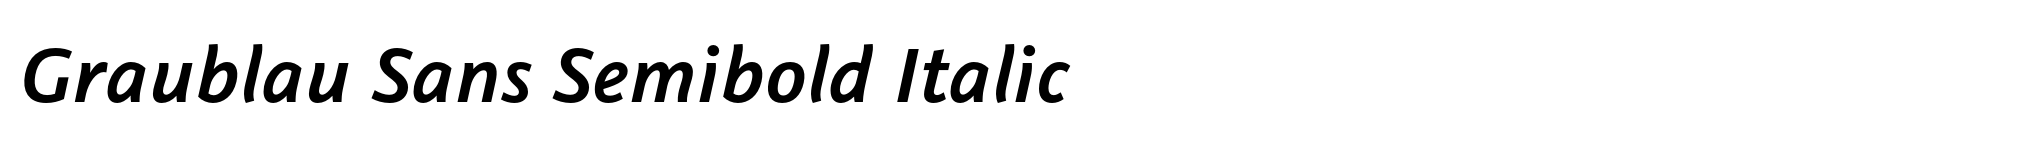 Graublau Sans Semibold Italic image